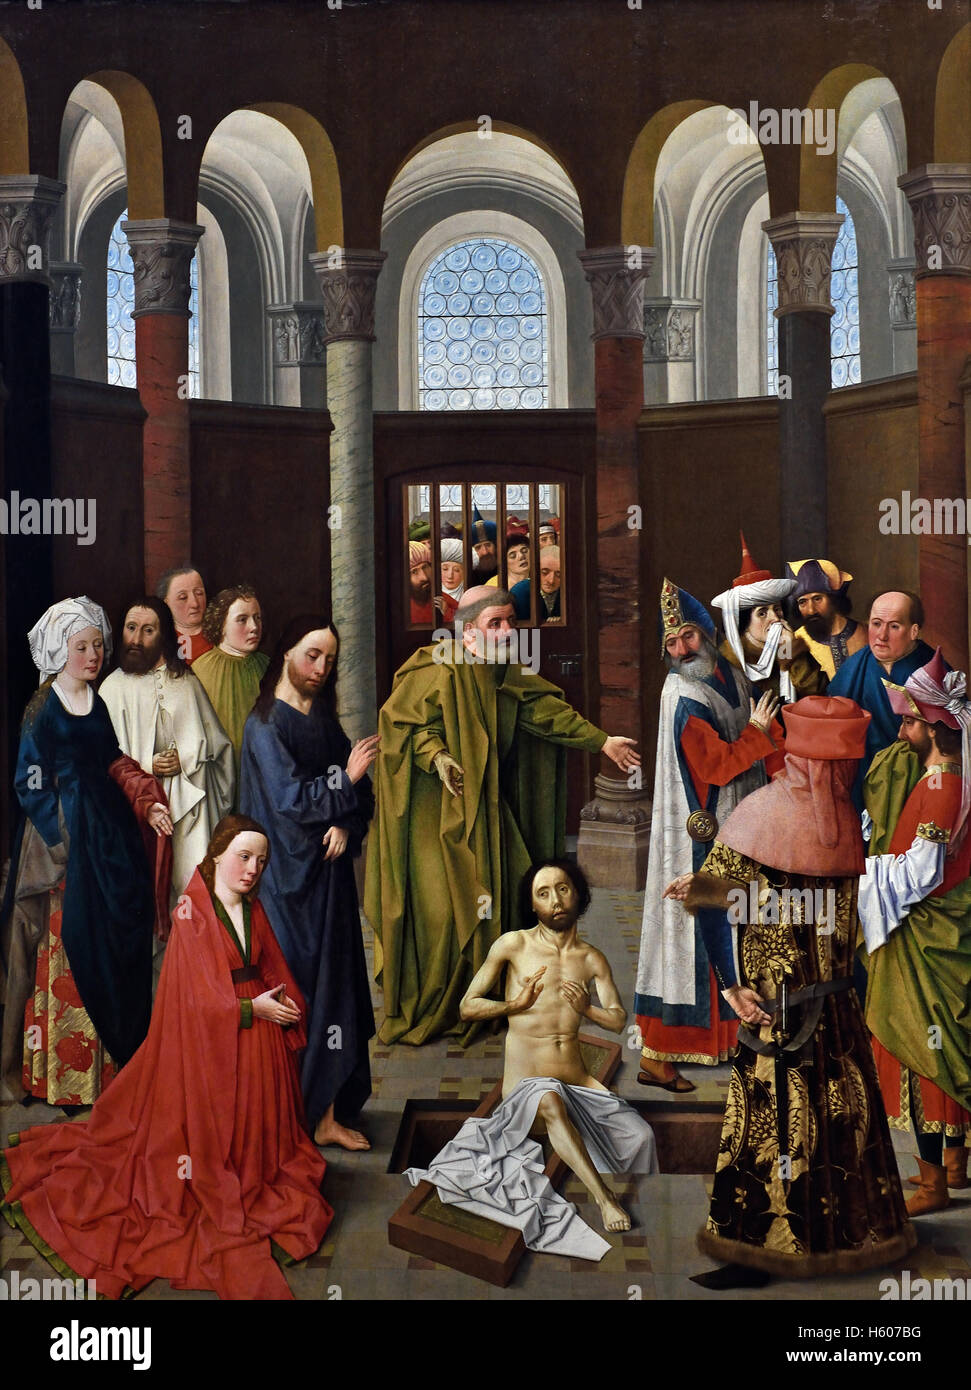 Anhebung der Lazarus 1450/1460 Albert van Ouwater (1400 - nach 1467 Haarlem) Maler Niederlande Niederlande Stockfoto